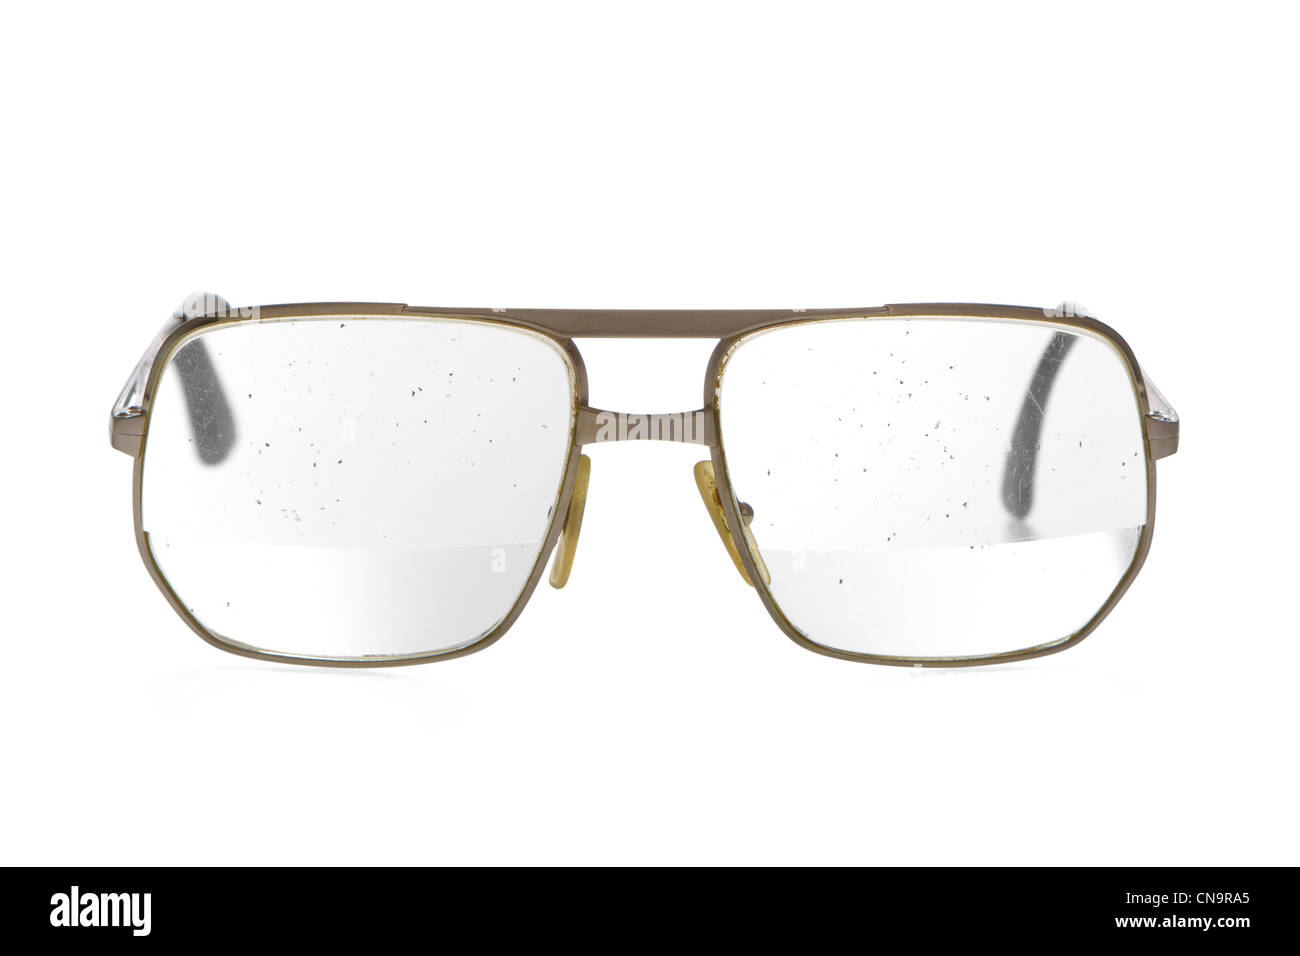 Sehr alt, schmutzig, klapprigen Brillen mit dicken Bifokallinse in gold Metallrahmen. Brille des älteren Menschen. Gesprenkelte Schmutz auf der Linse. Stockfoto